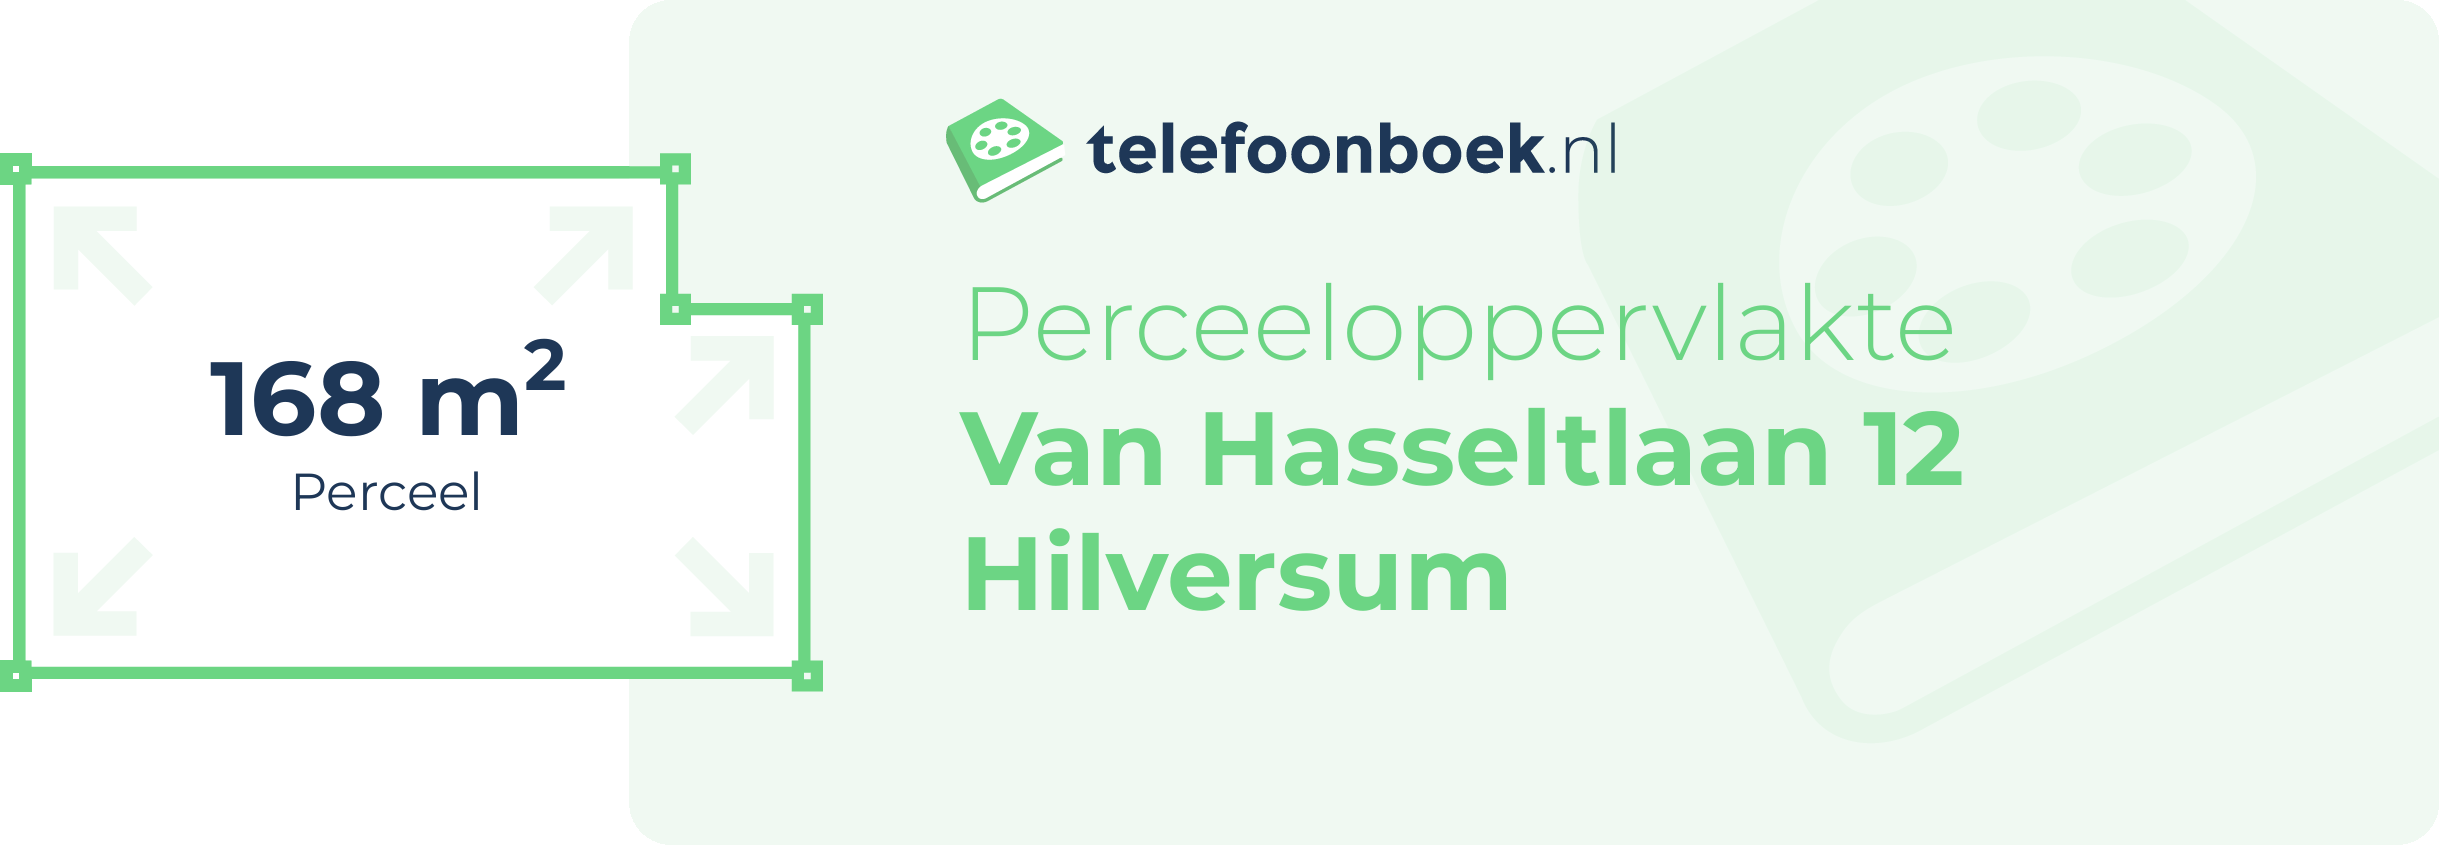 Perceeloppervlakte Van Hasseltlaan 12 Hilversum